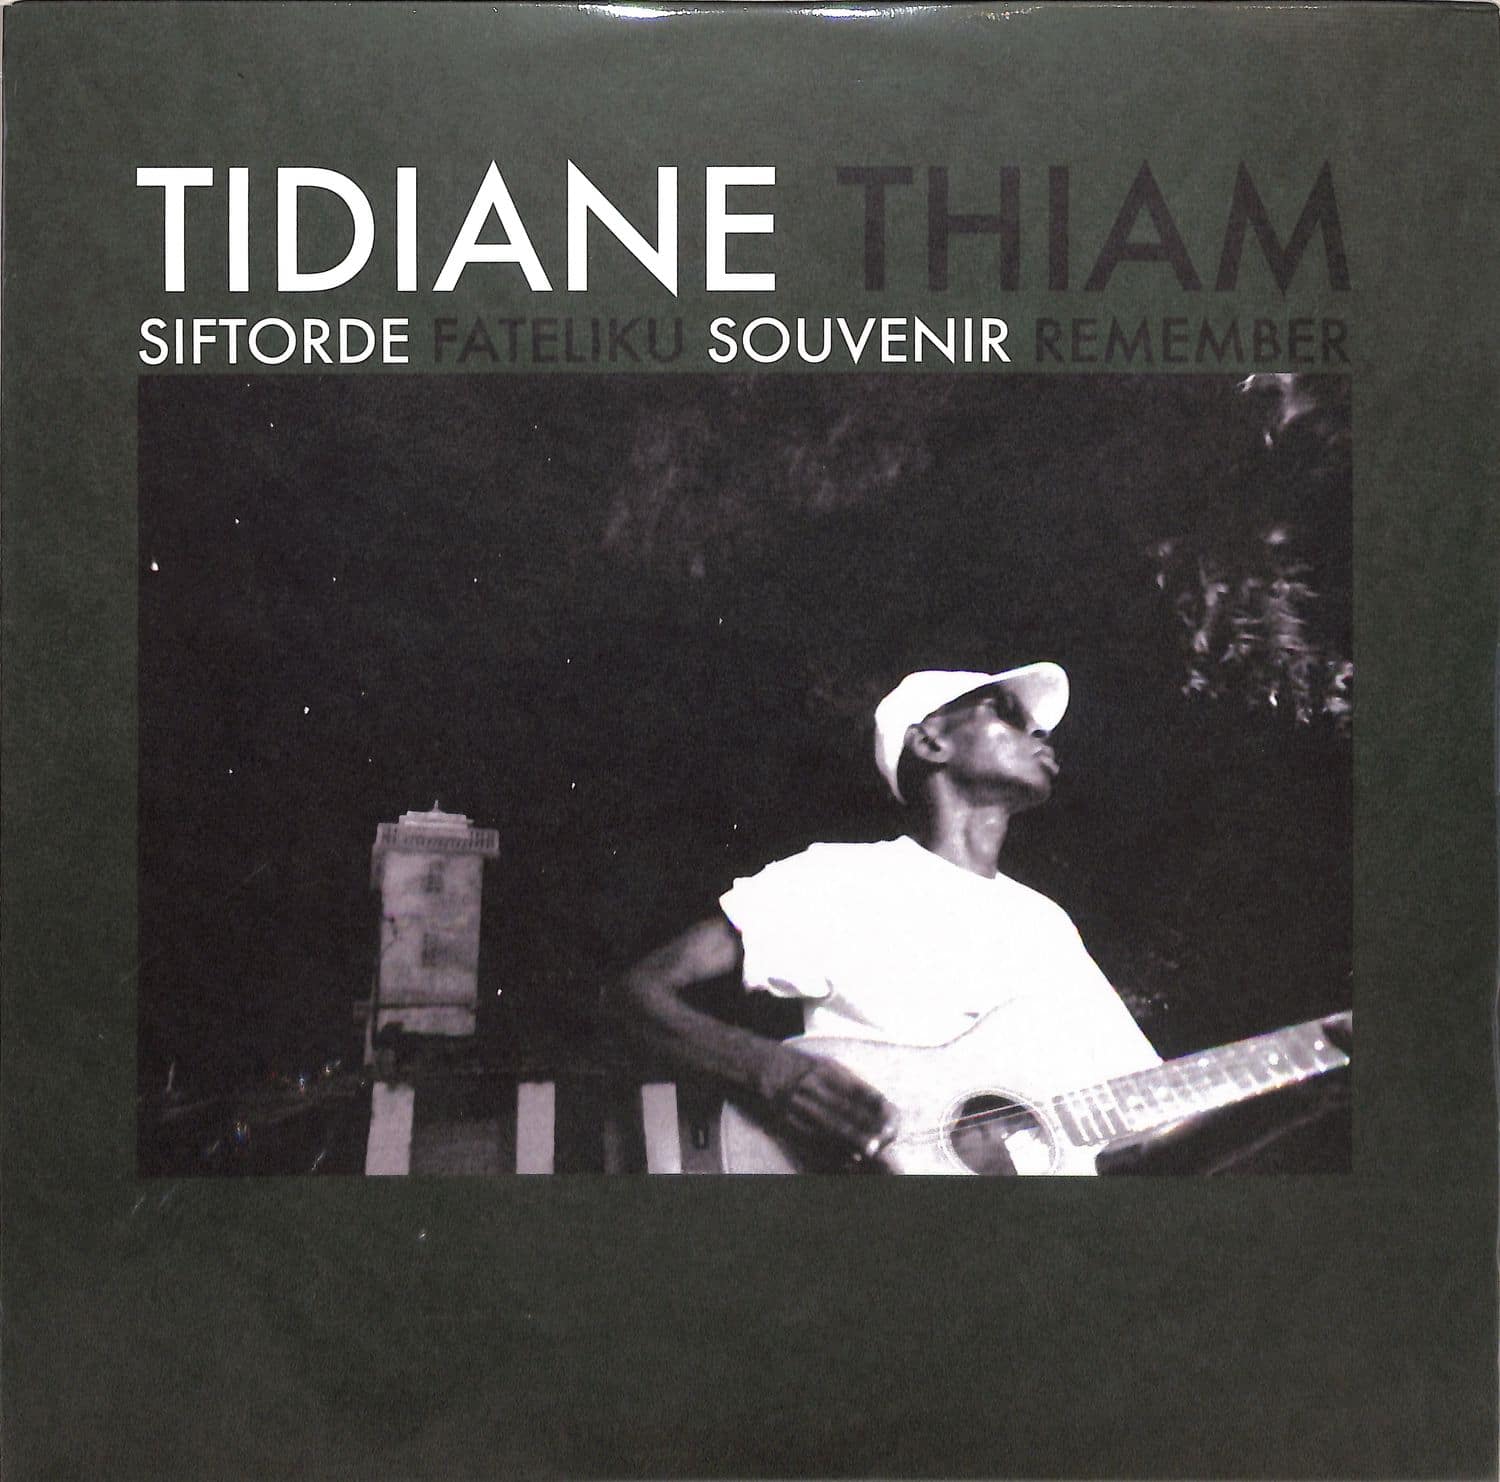 Tidiane Thiam - SIFTORDE 